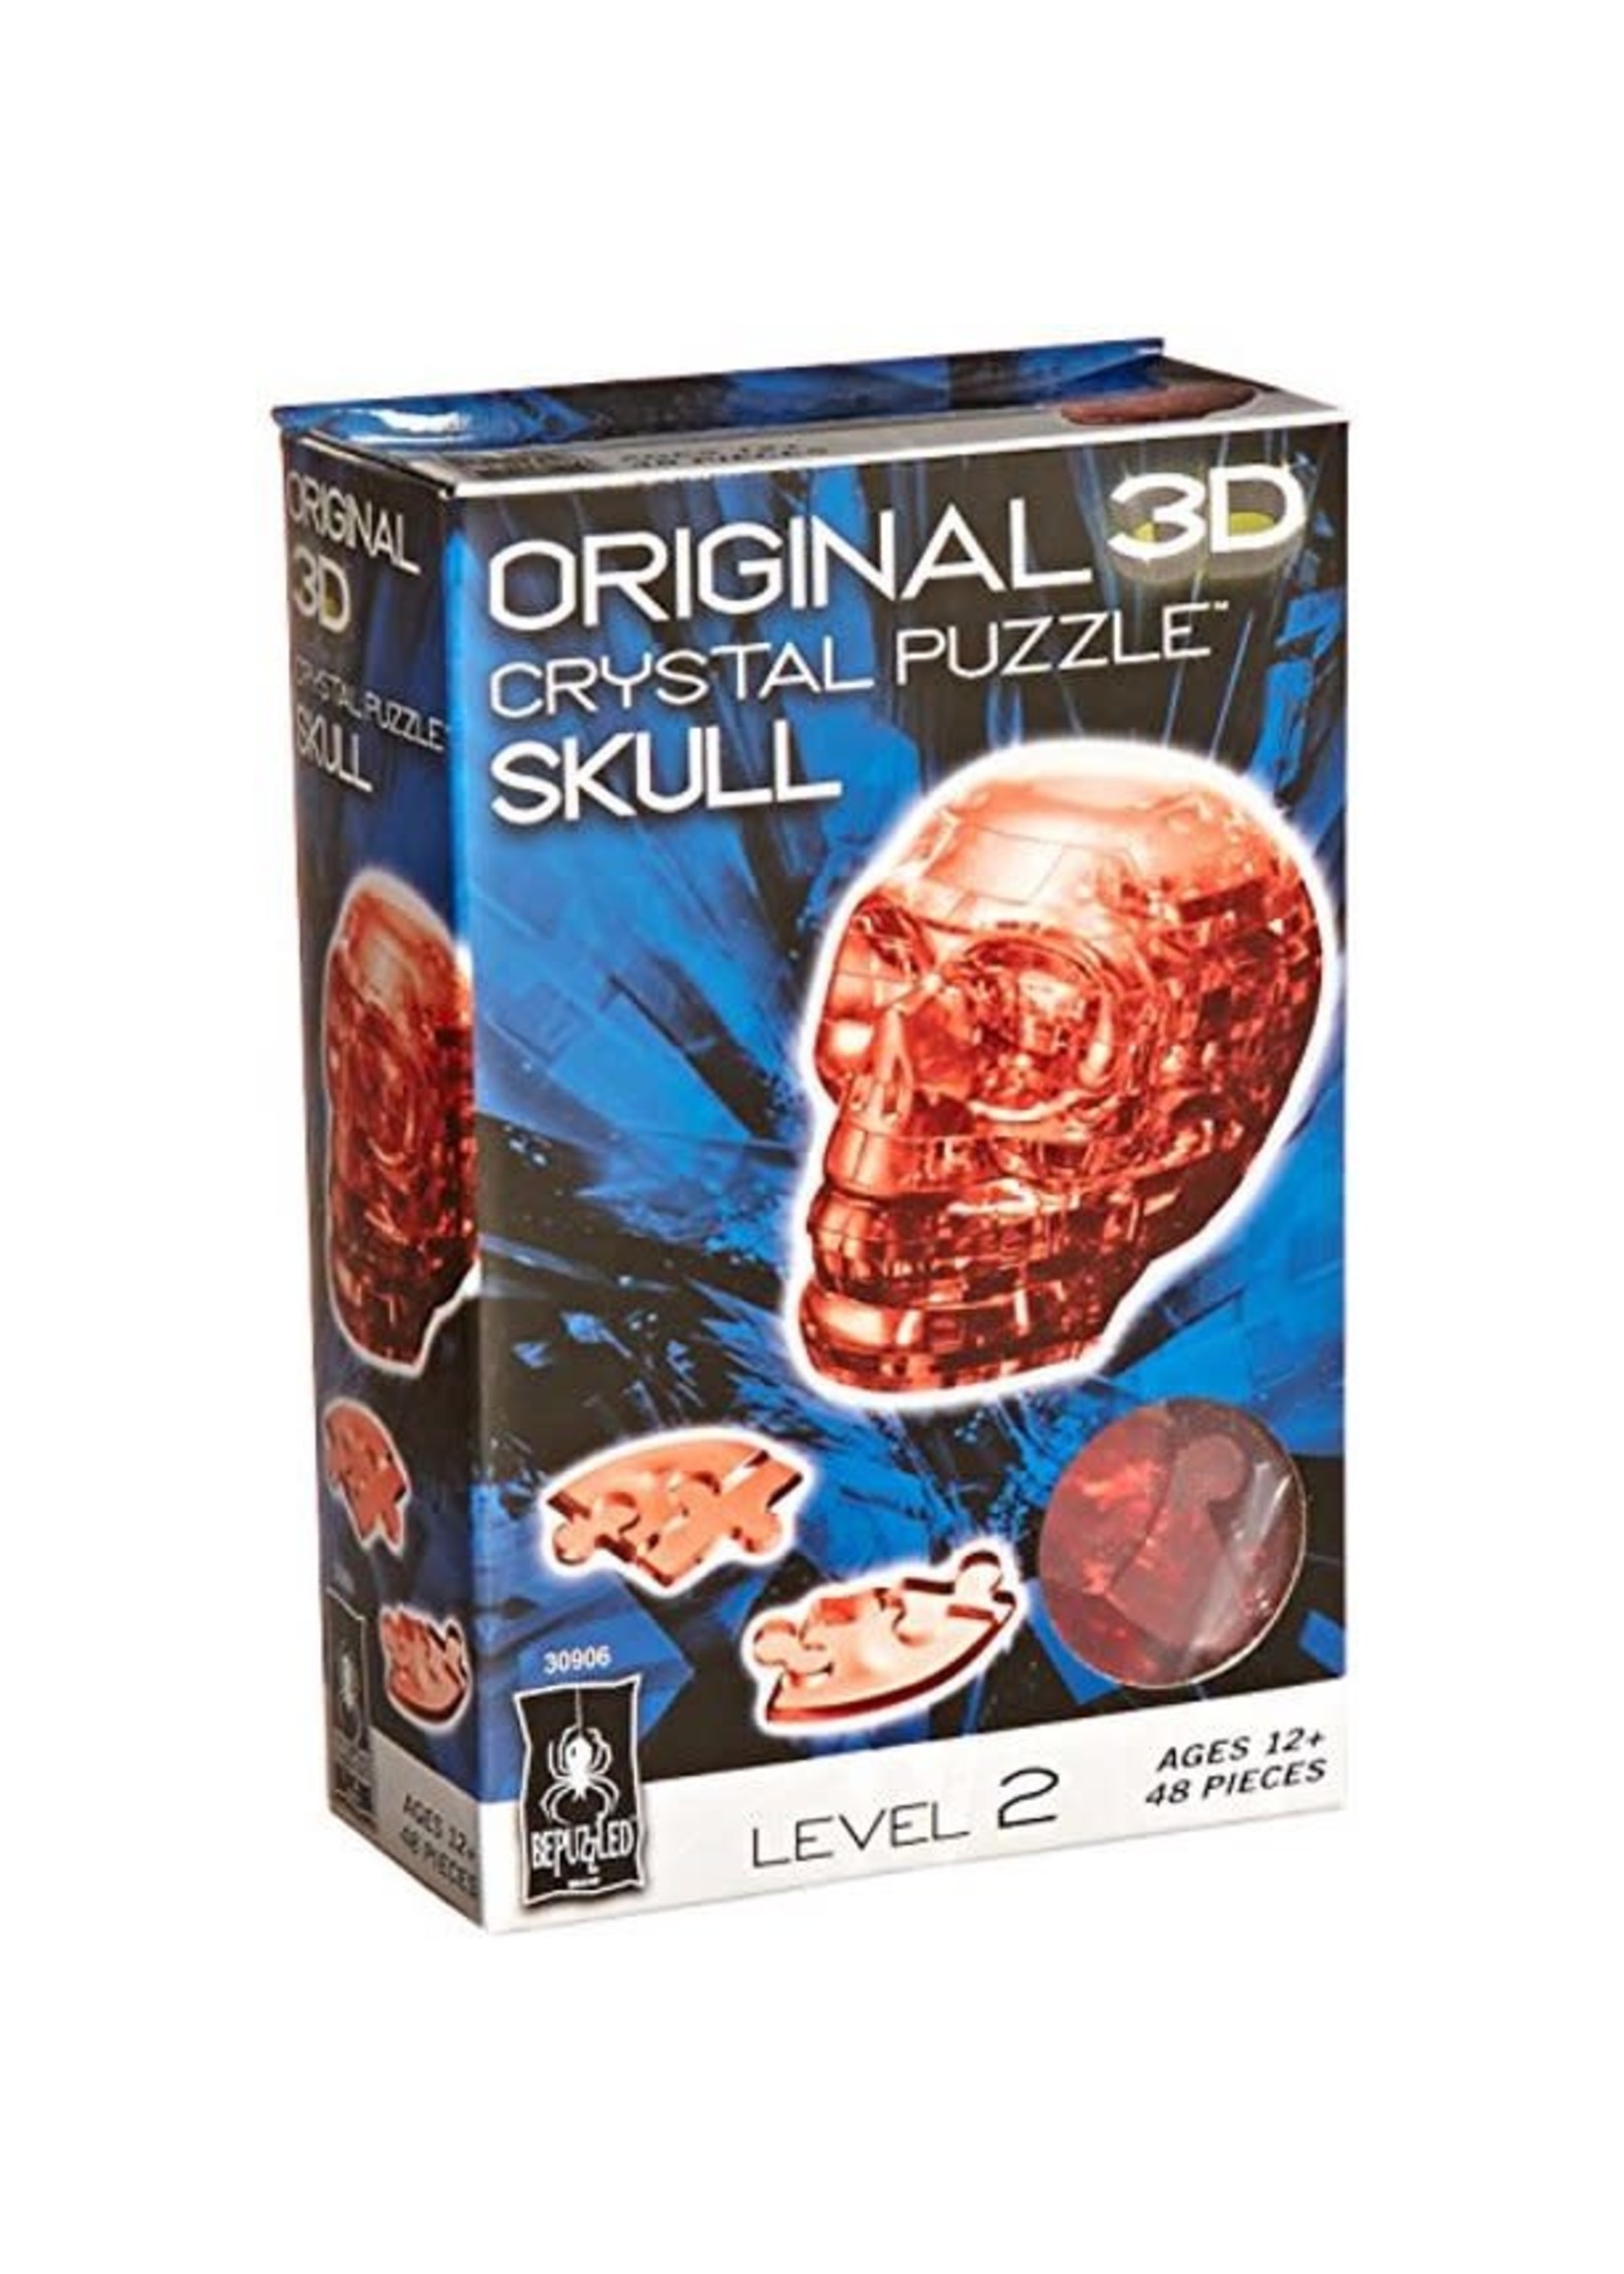 3D Crystal Skull Red